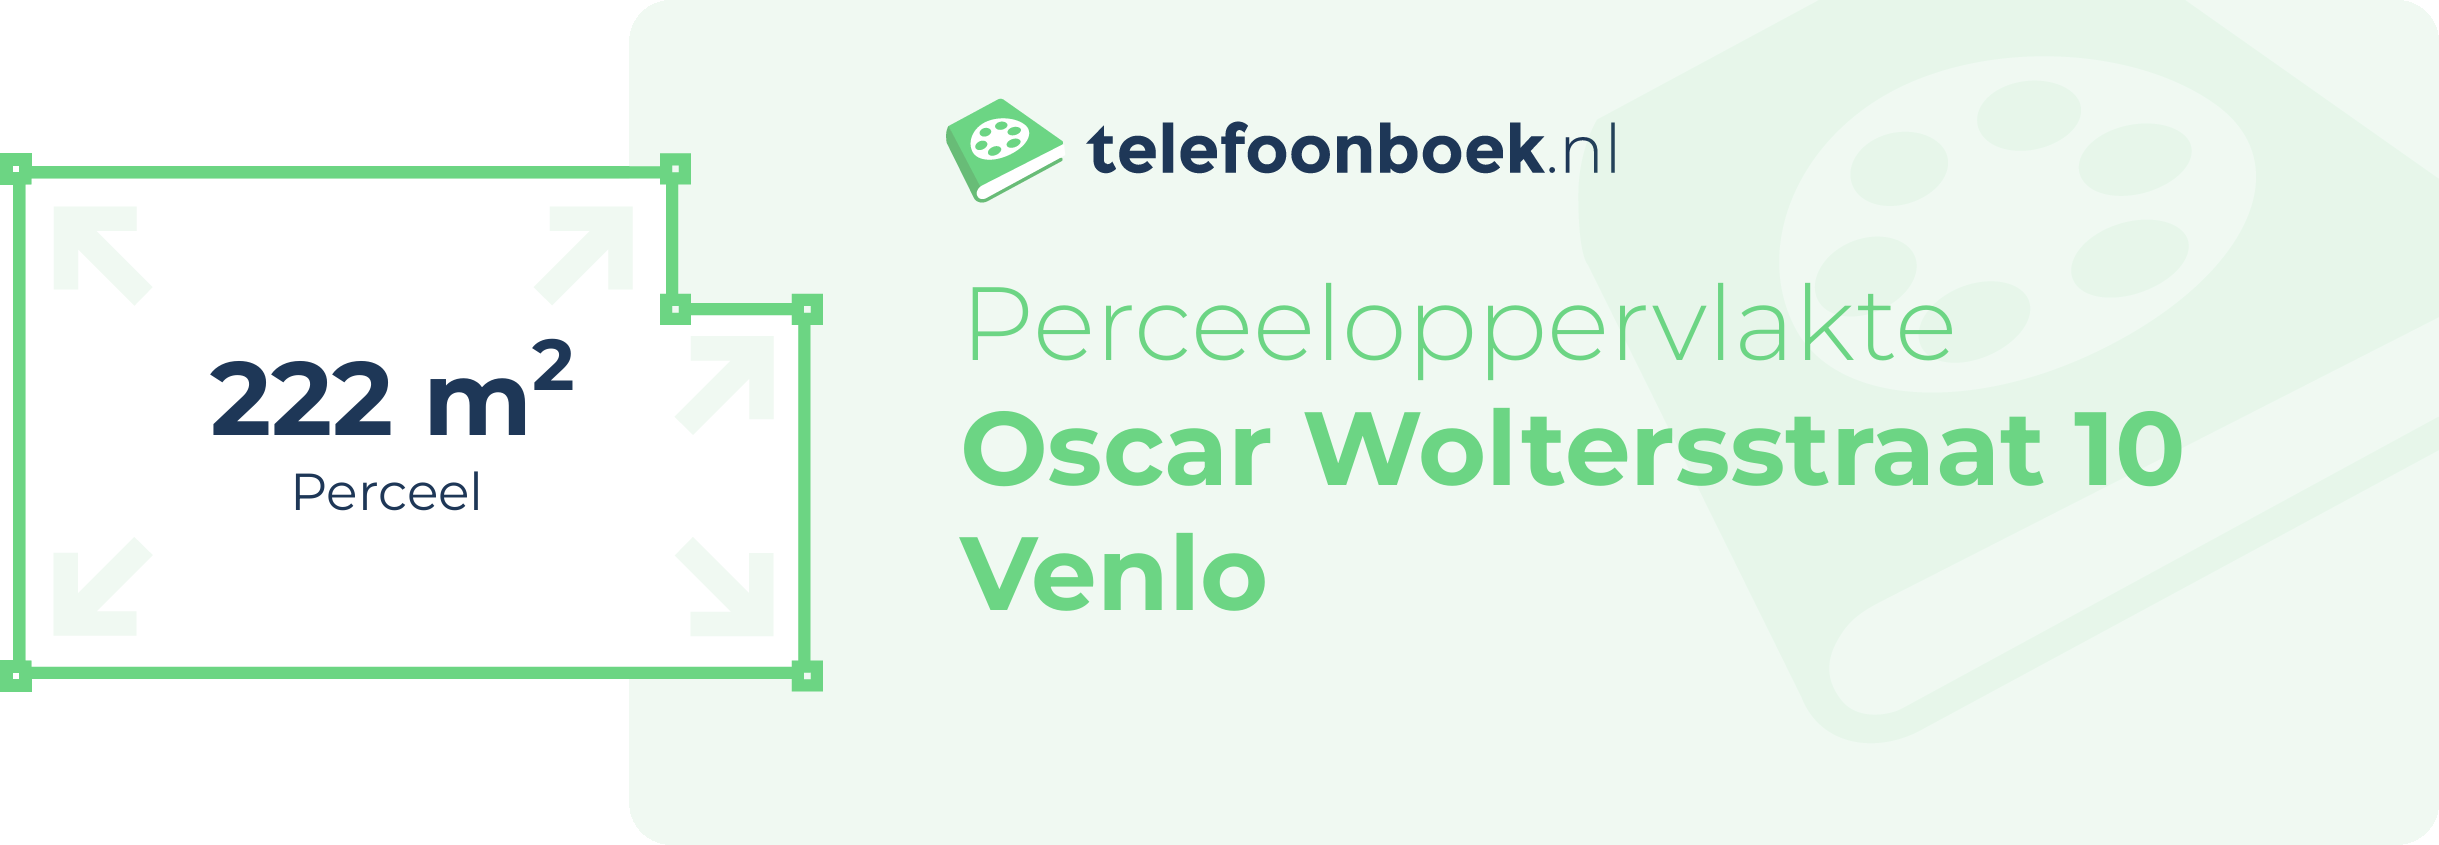 Perceeloppervlakte Oscar Woltersstraat 10 Venlo